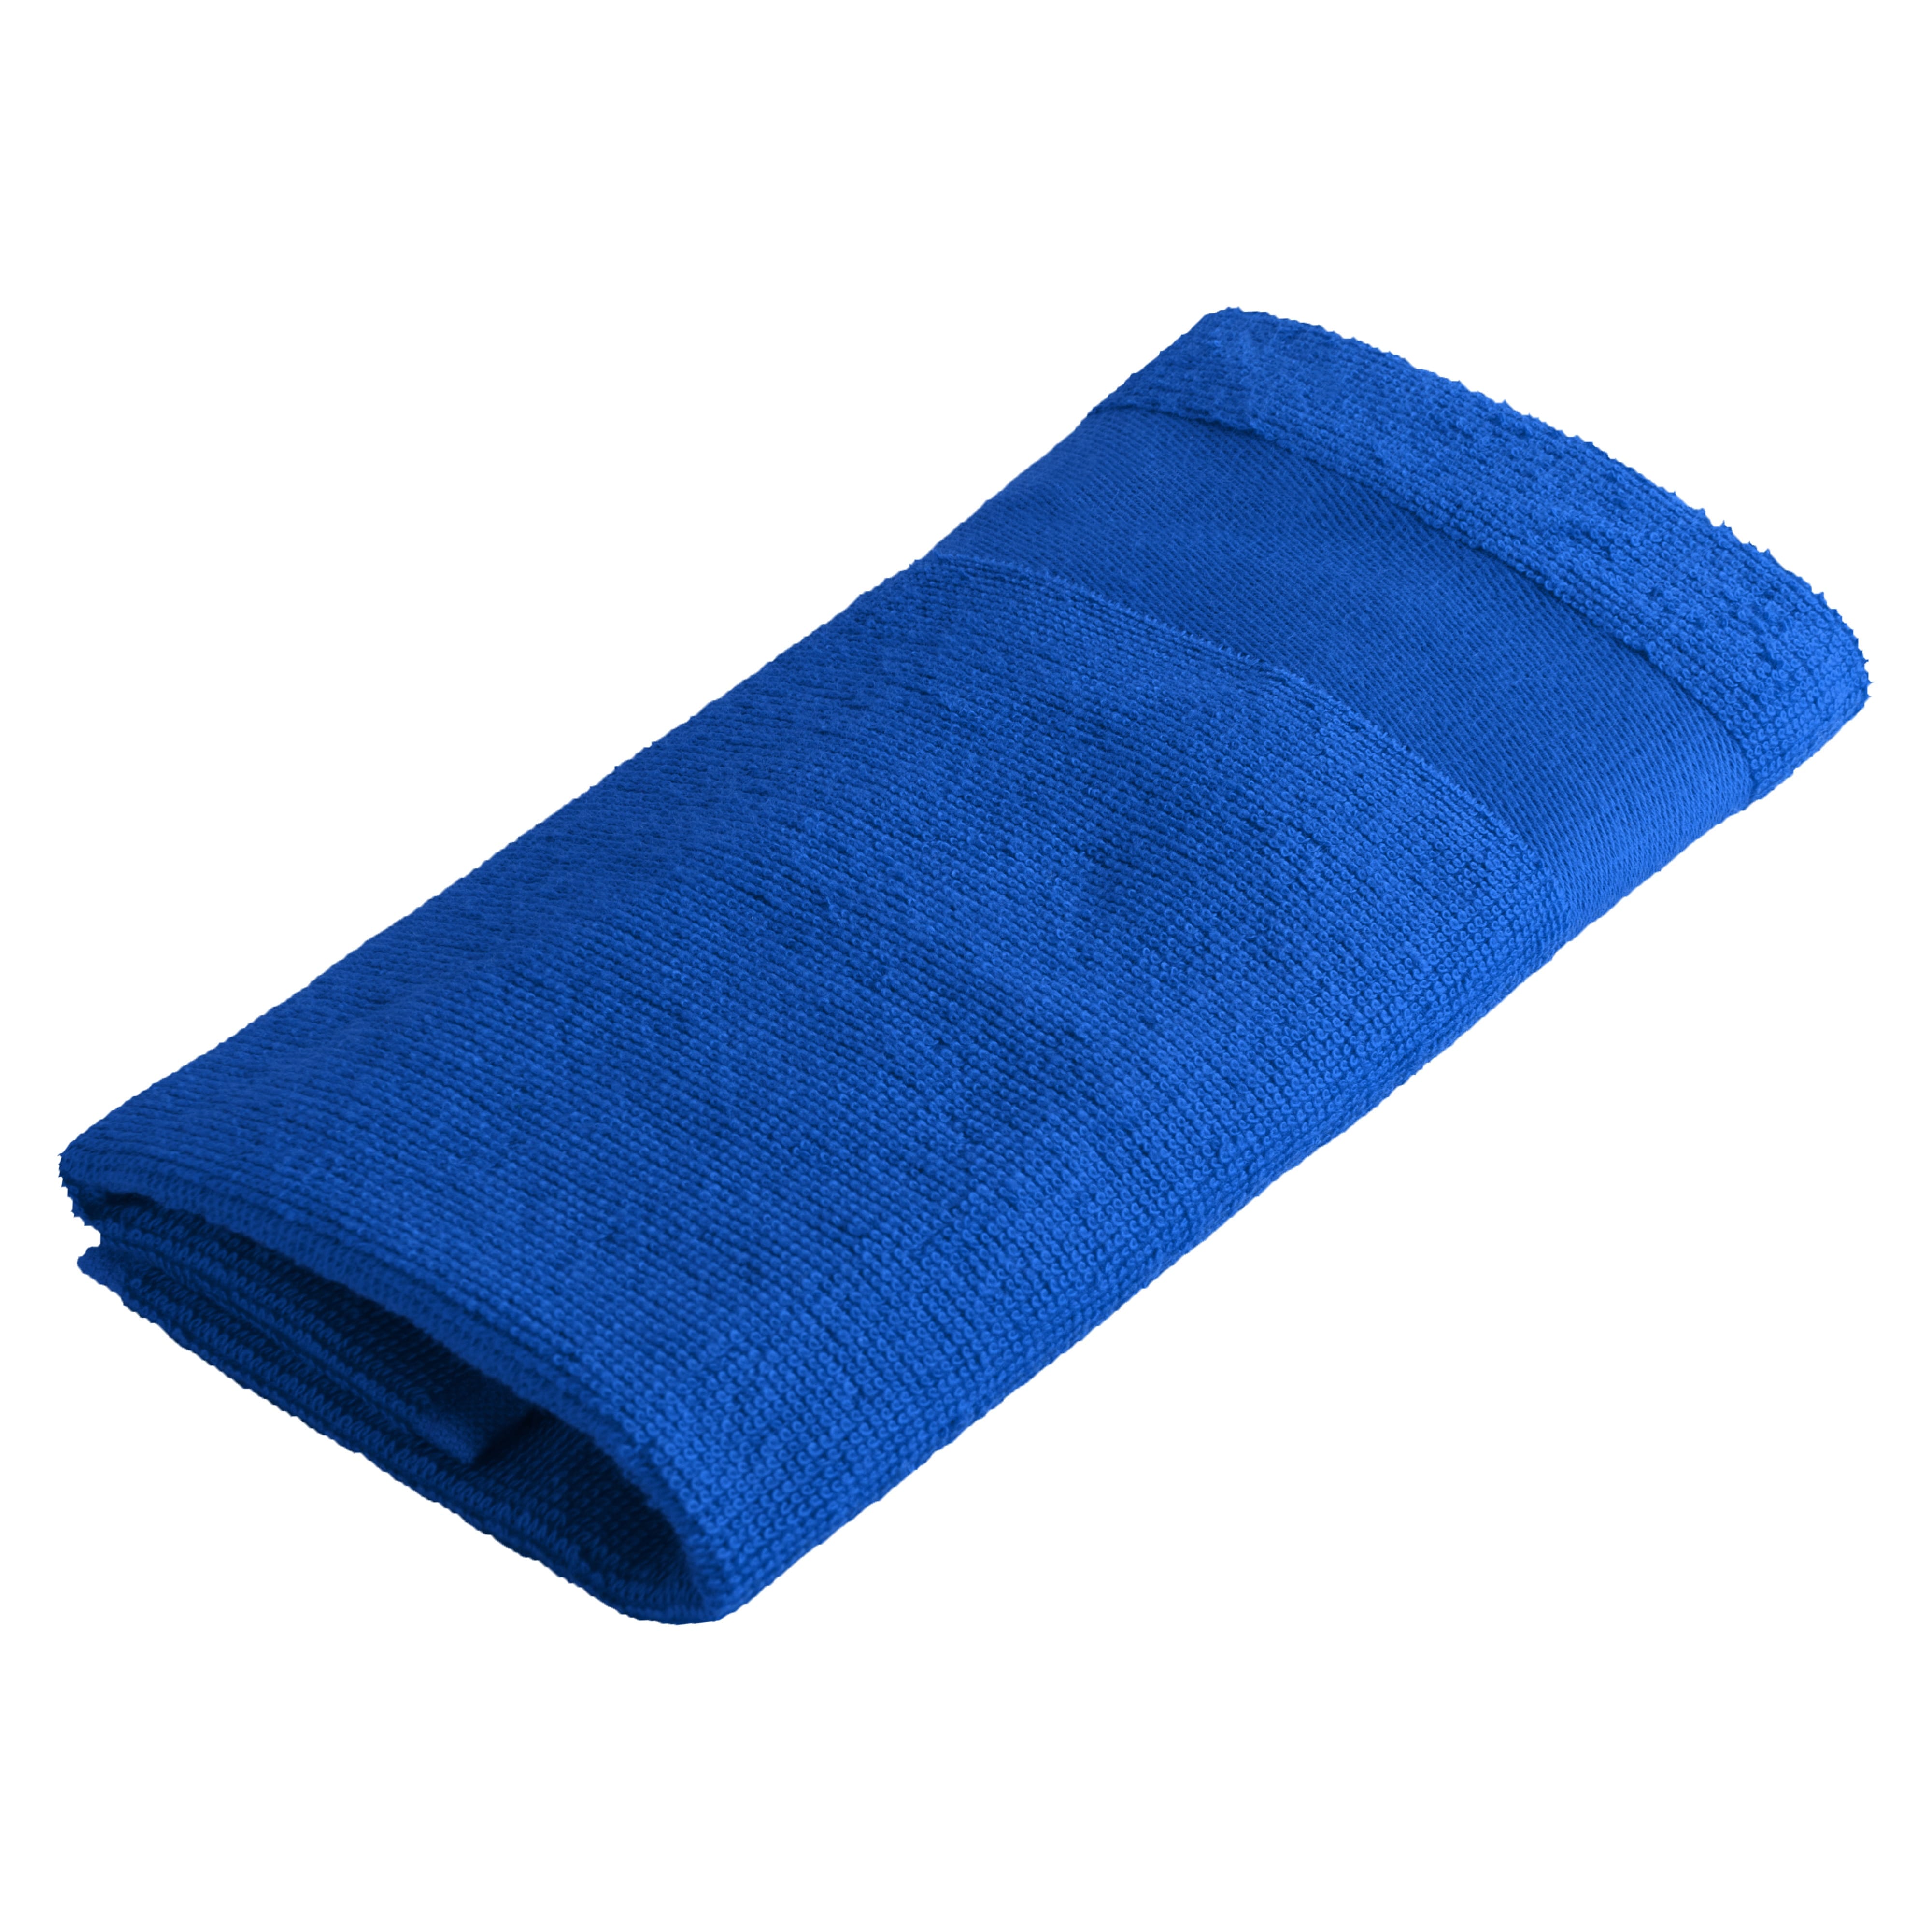 Asciugamani Colorati per Ospiti - Bagnoregio